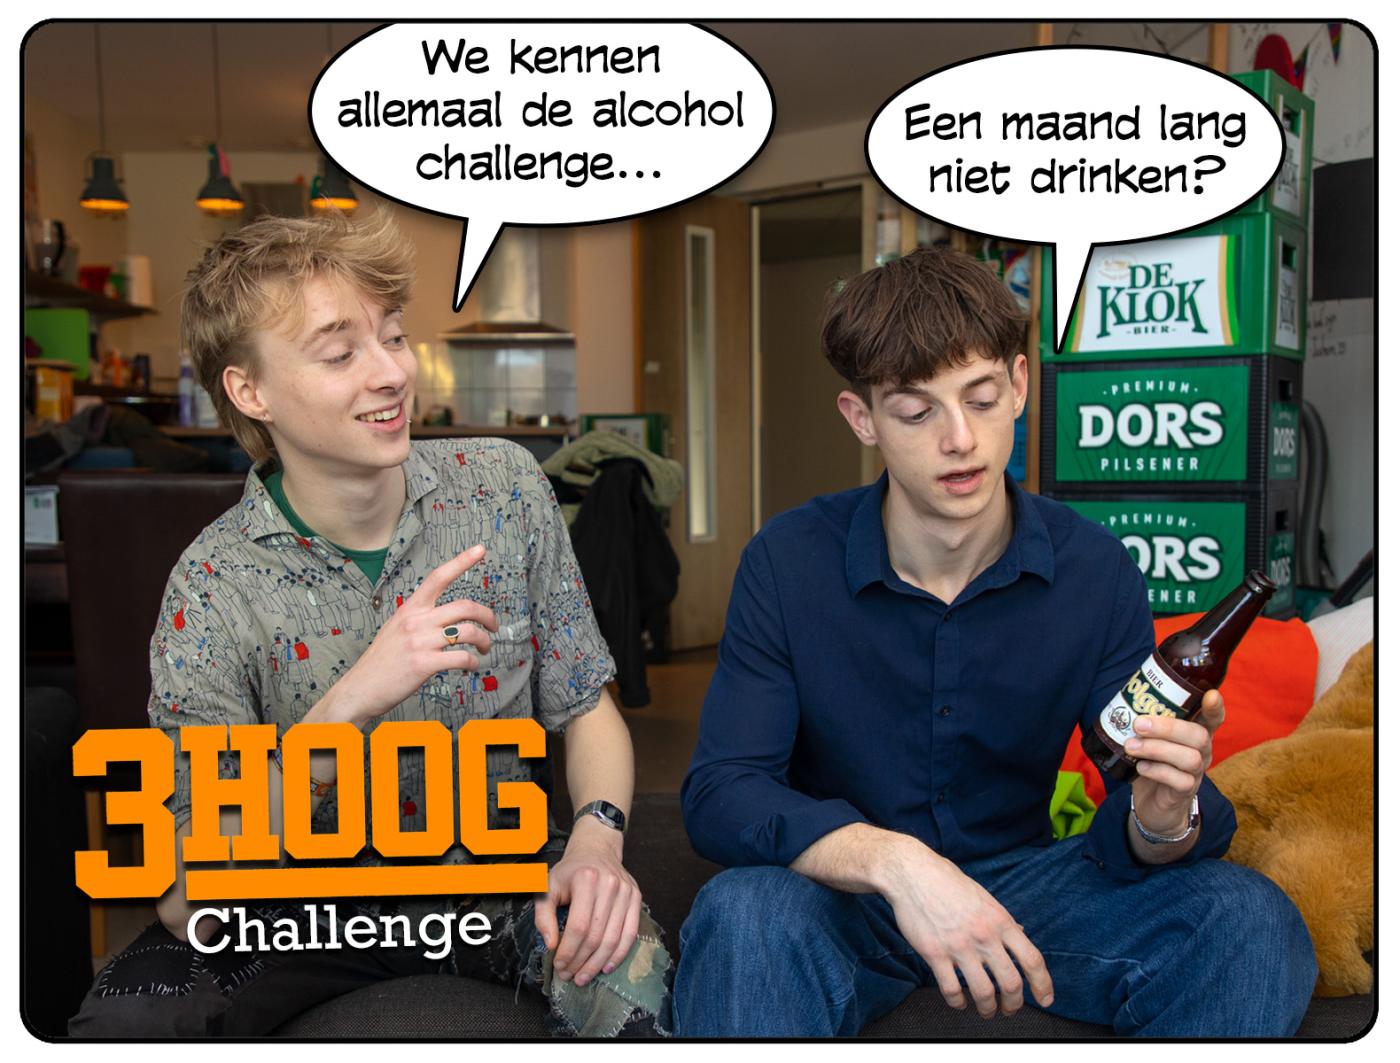 3Hoog: Challenge